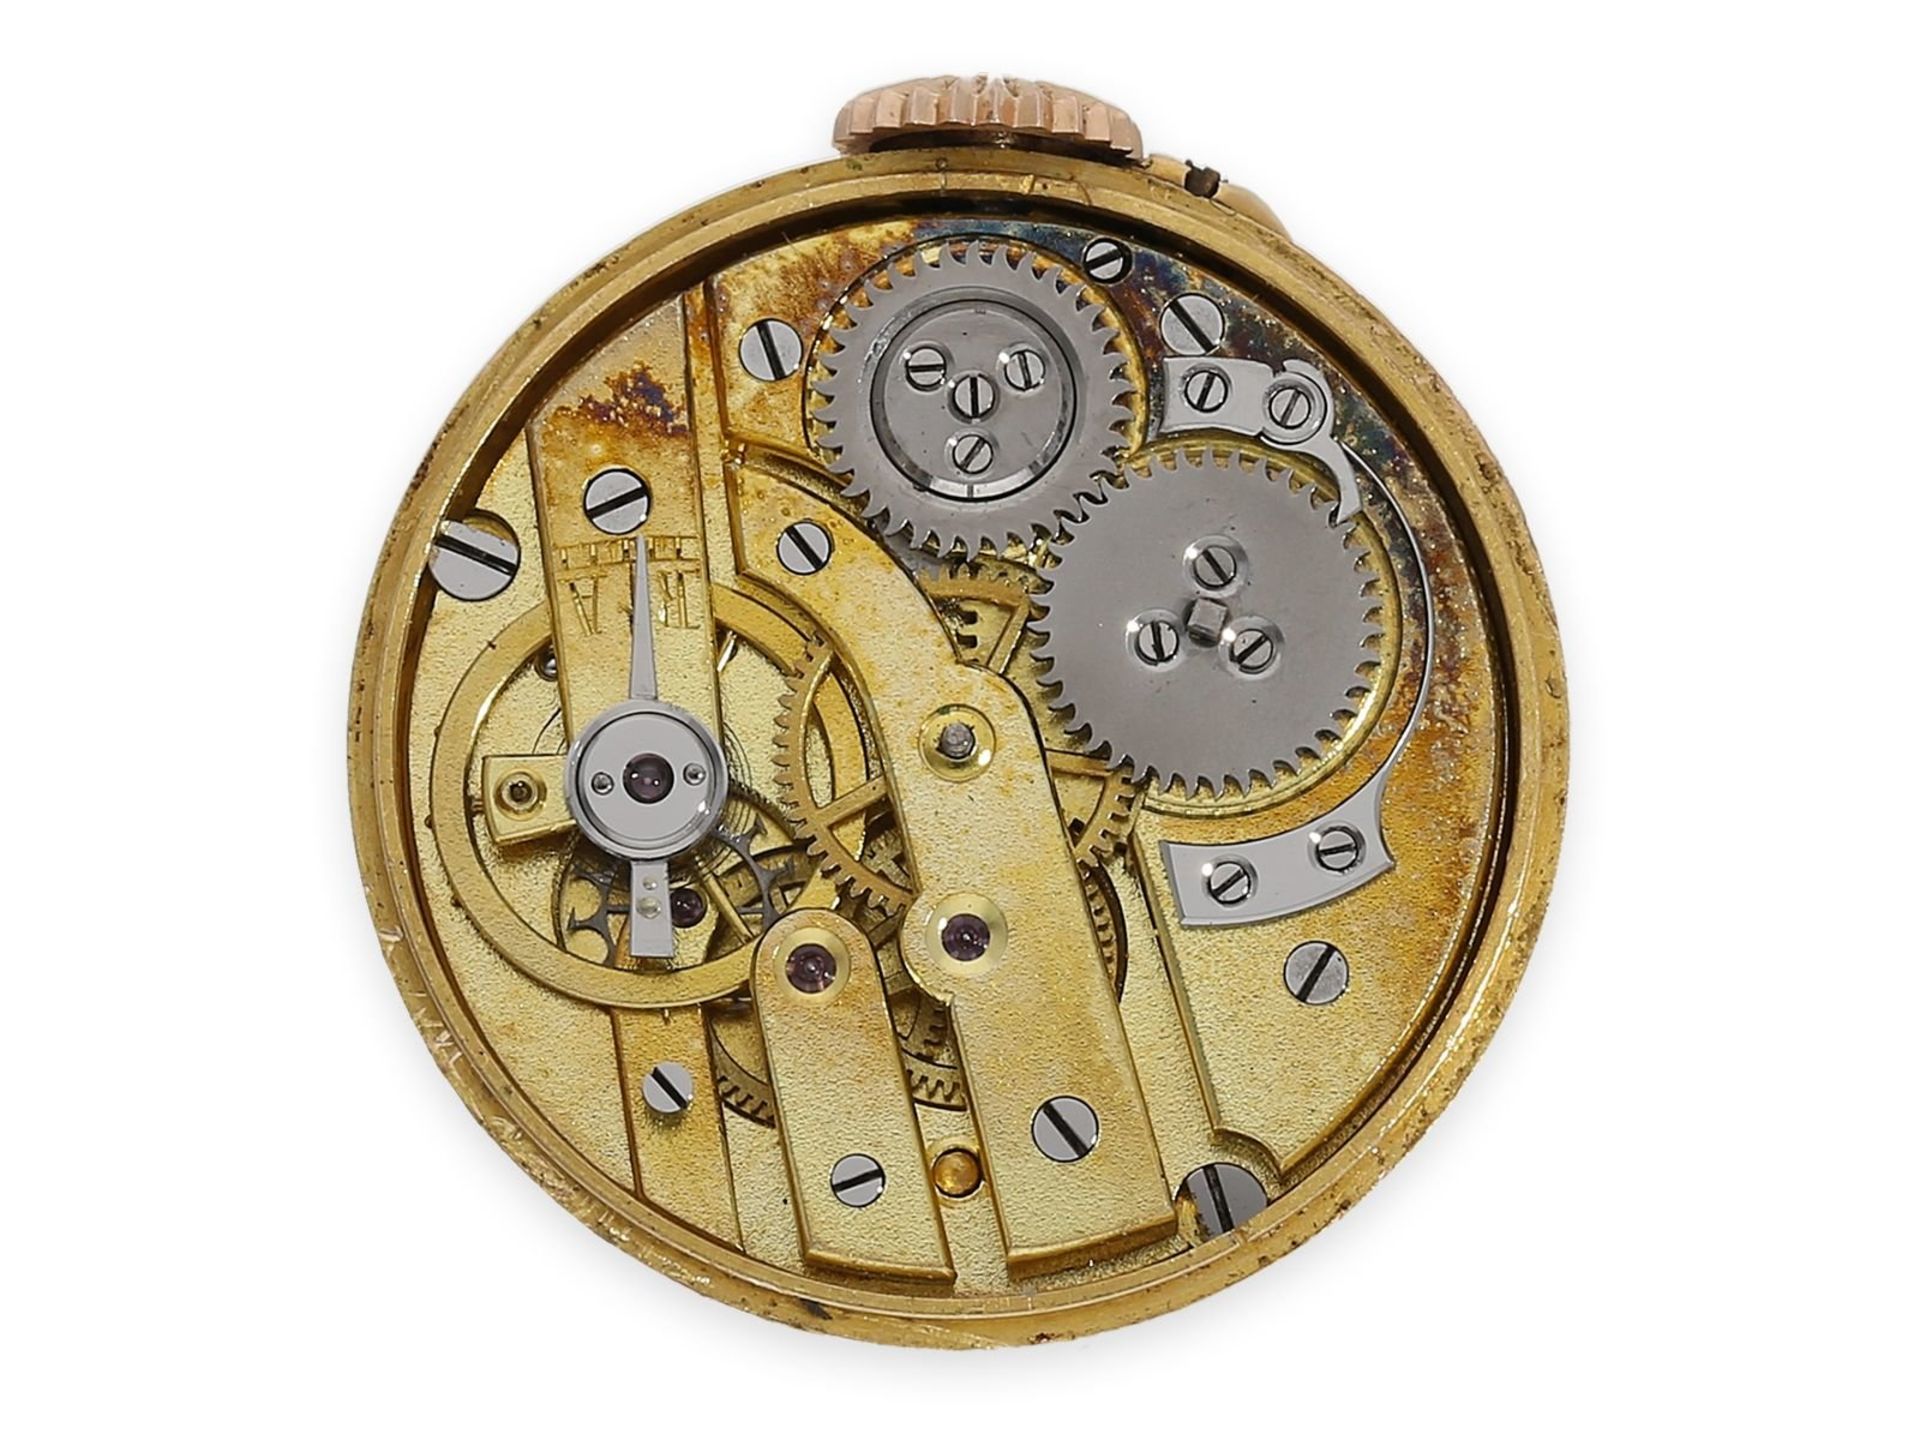 Knopfloch-Uhr: extrem rare Knopflochuhr in 18K Gold mit Diamant- und Rubinbesatz, punziert "bté s.g. - Bild 4 aus 5